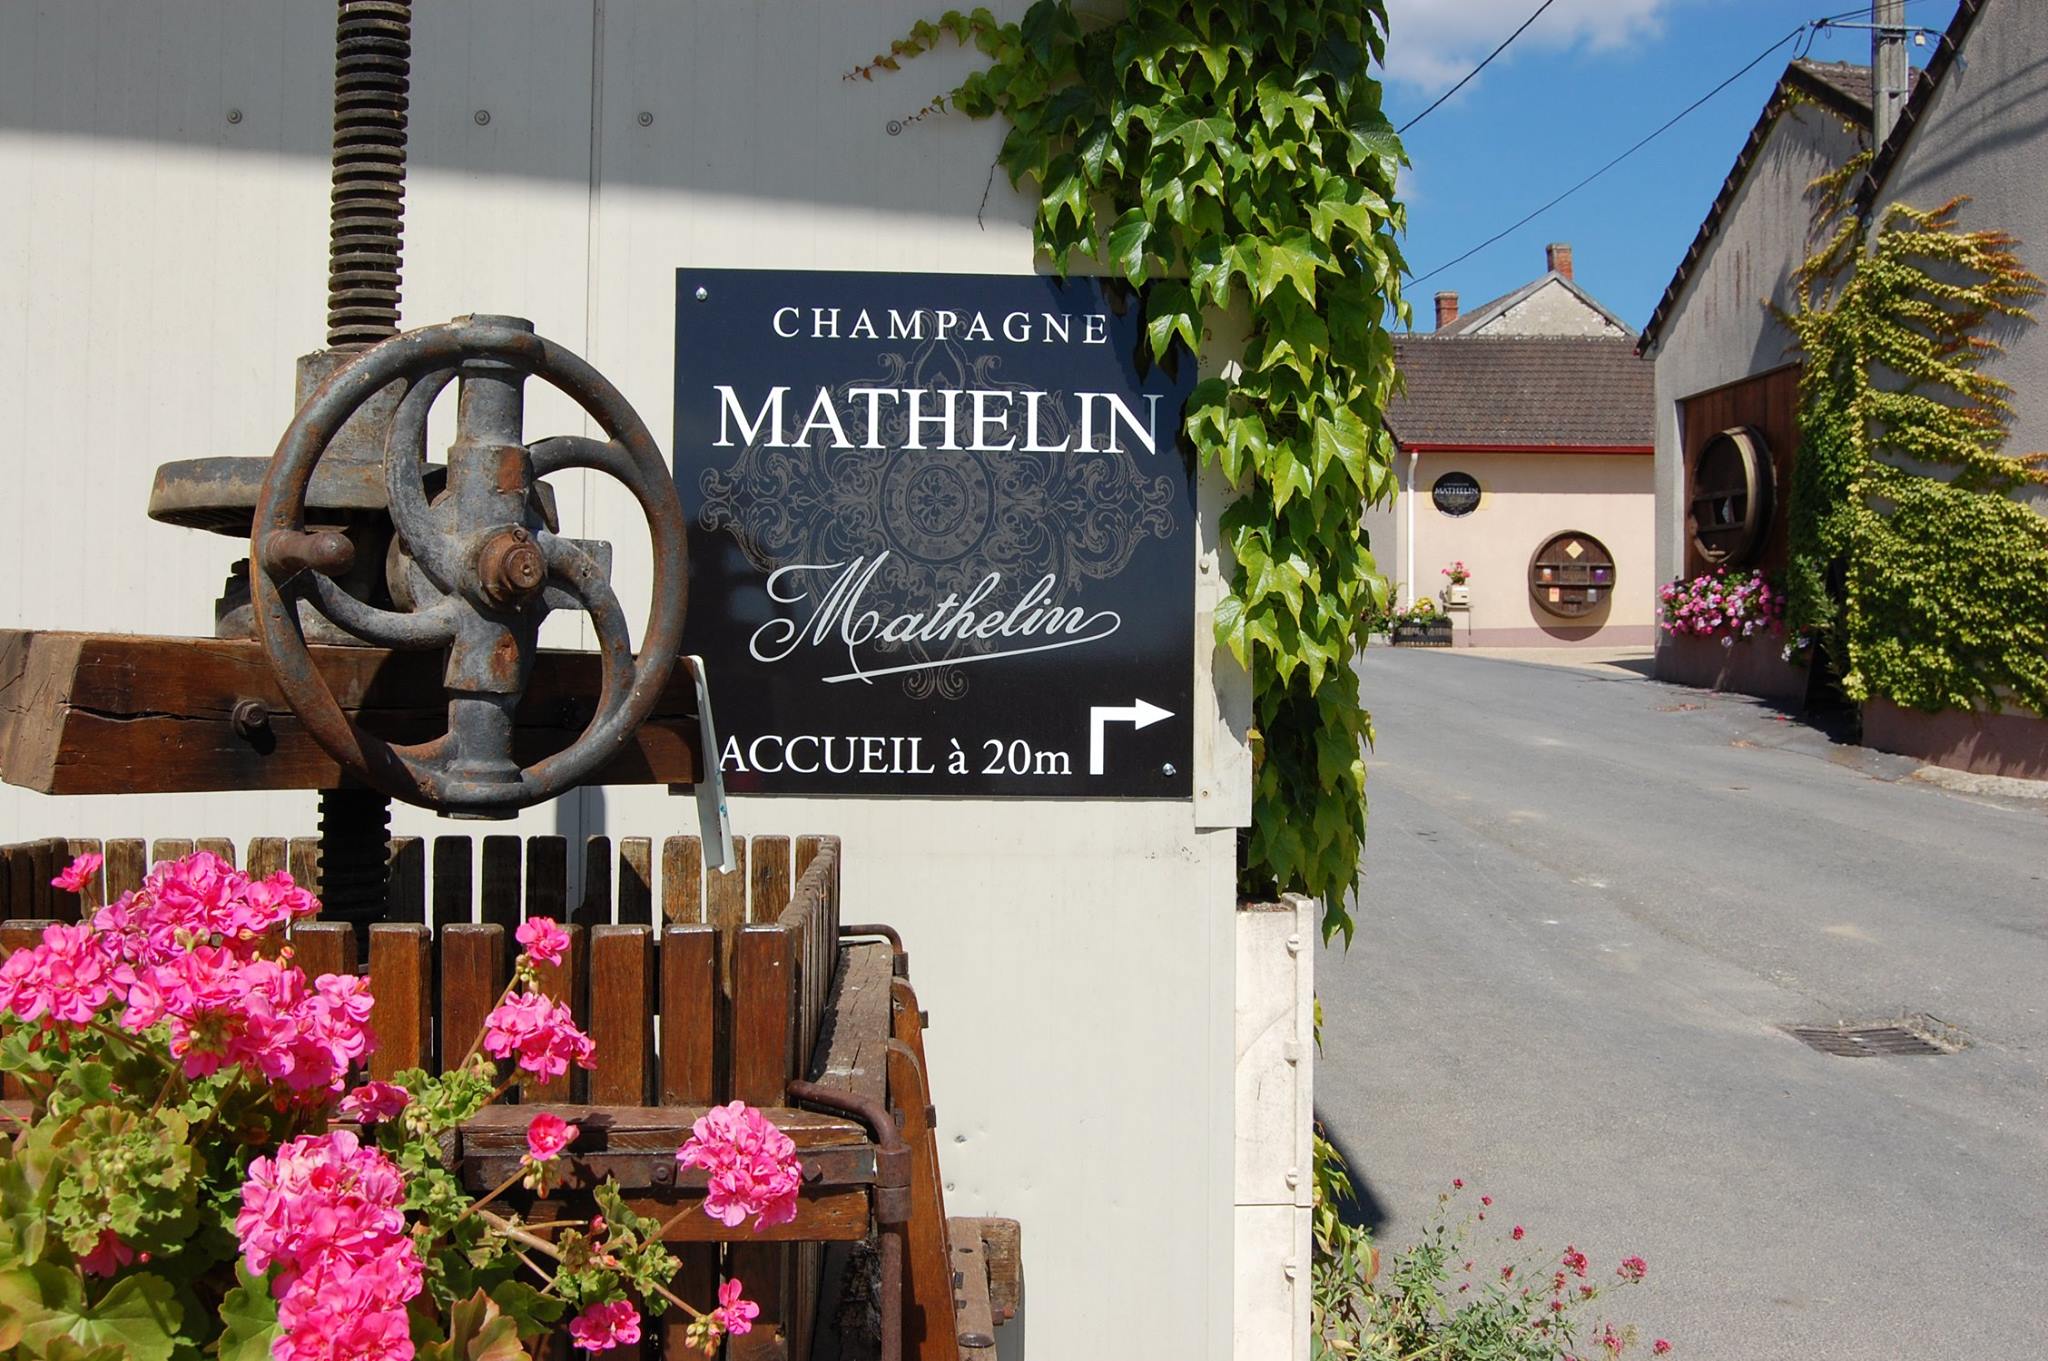 Aire de stationnement et service / Champagne Mathelin